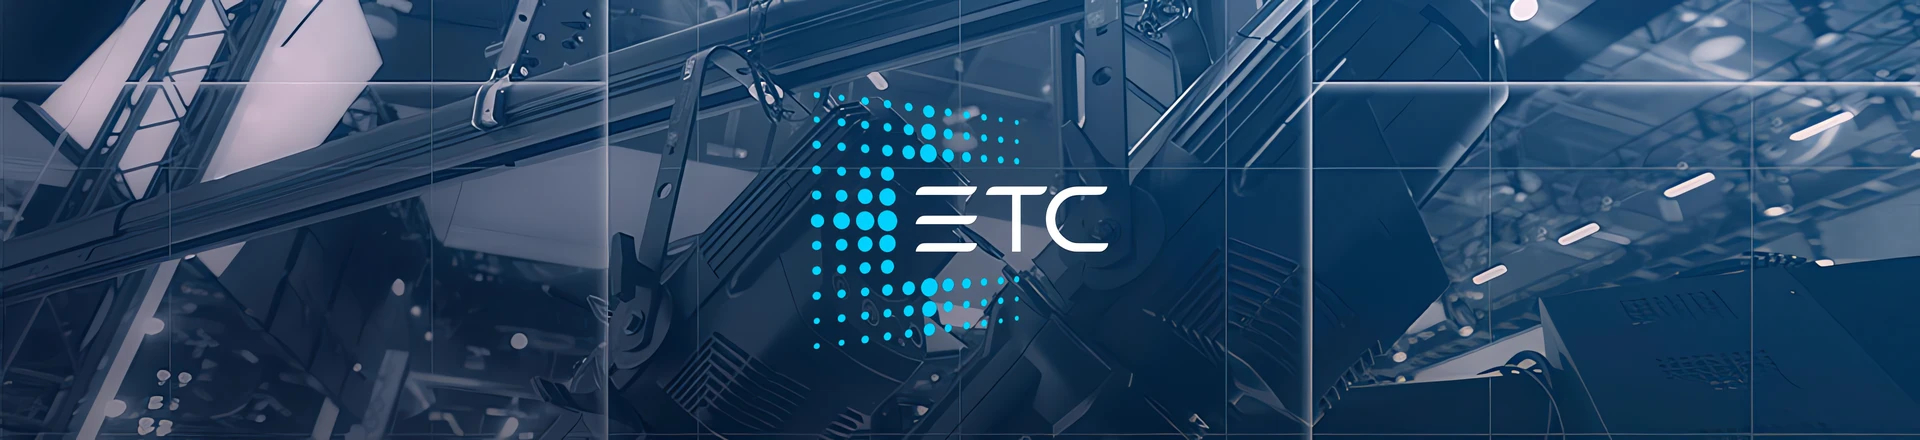 ETC Launch - Pokaz nowych urządzeń już 30 i 31 marca